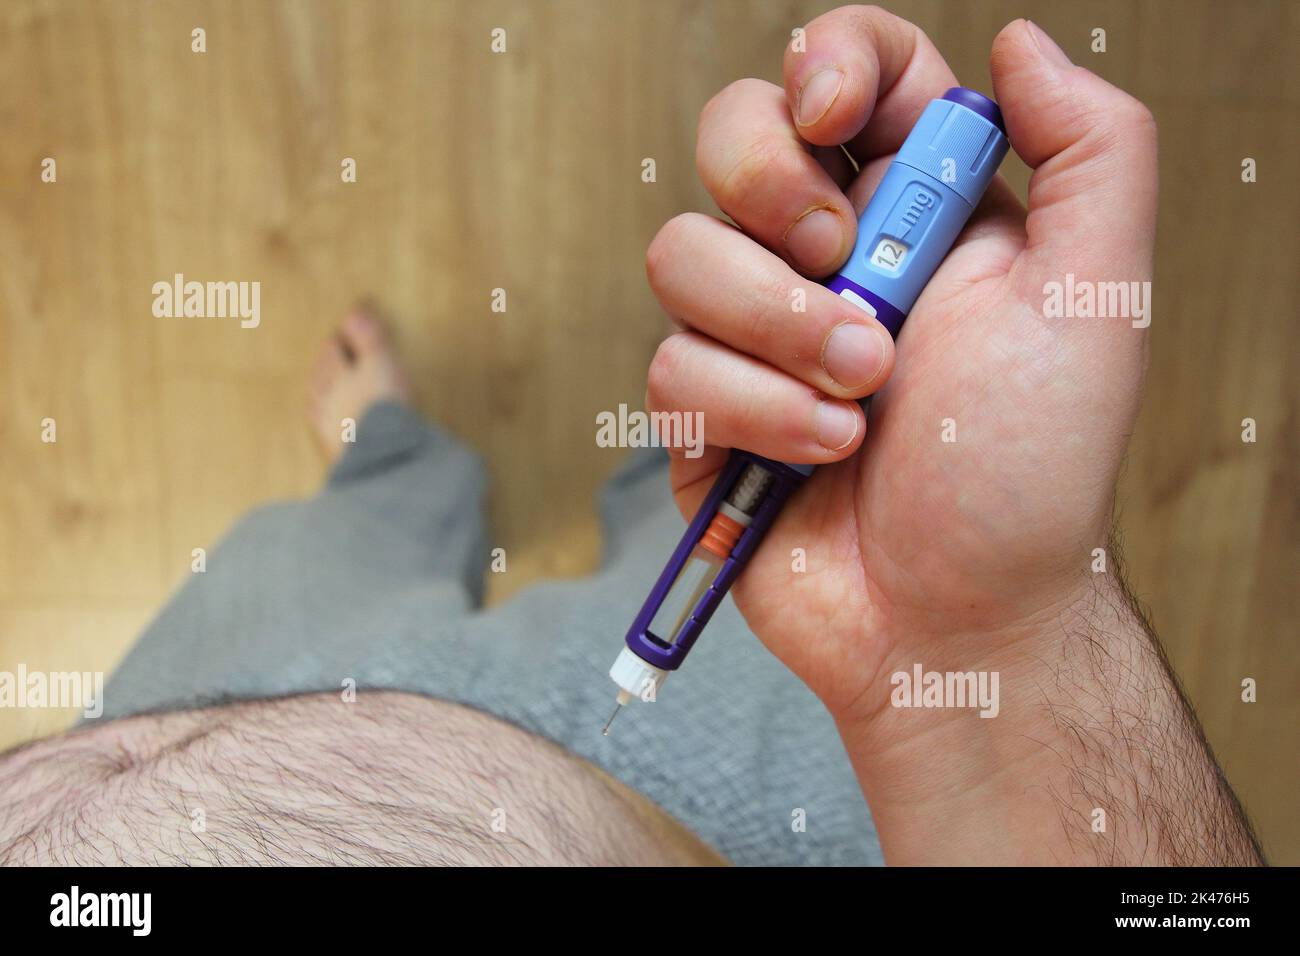 Uomo in sovrappeso che applica iniezione di medicinale per il diabete (siringa) nello stomaco, nella pancia Foto Stock